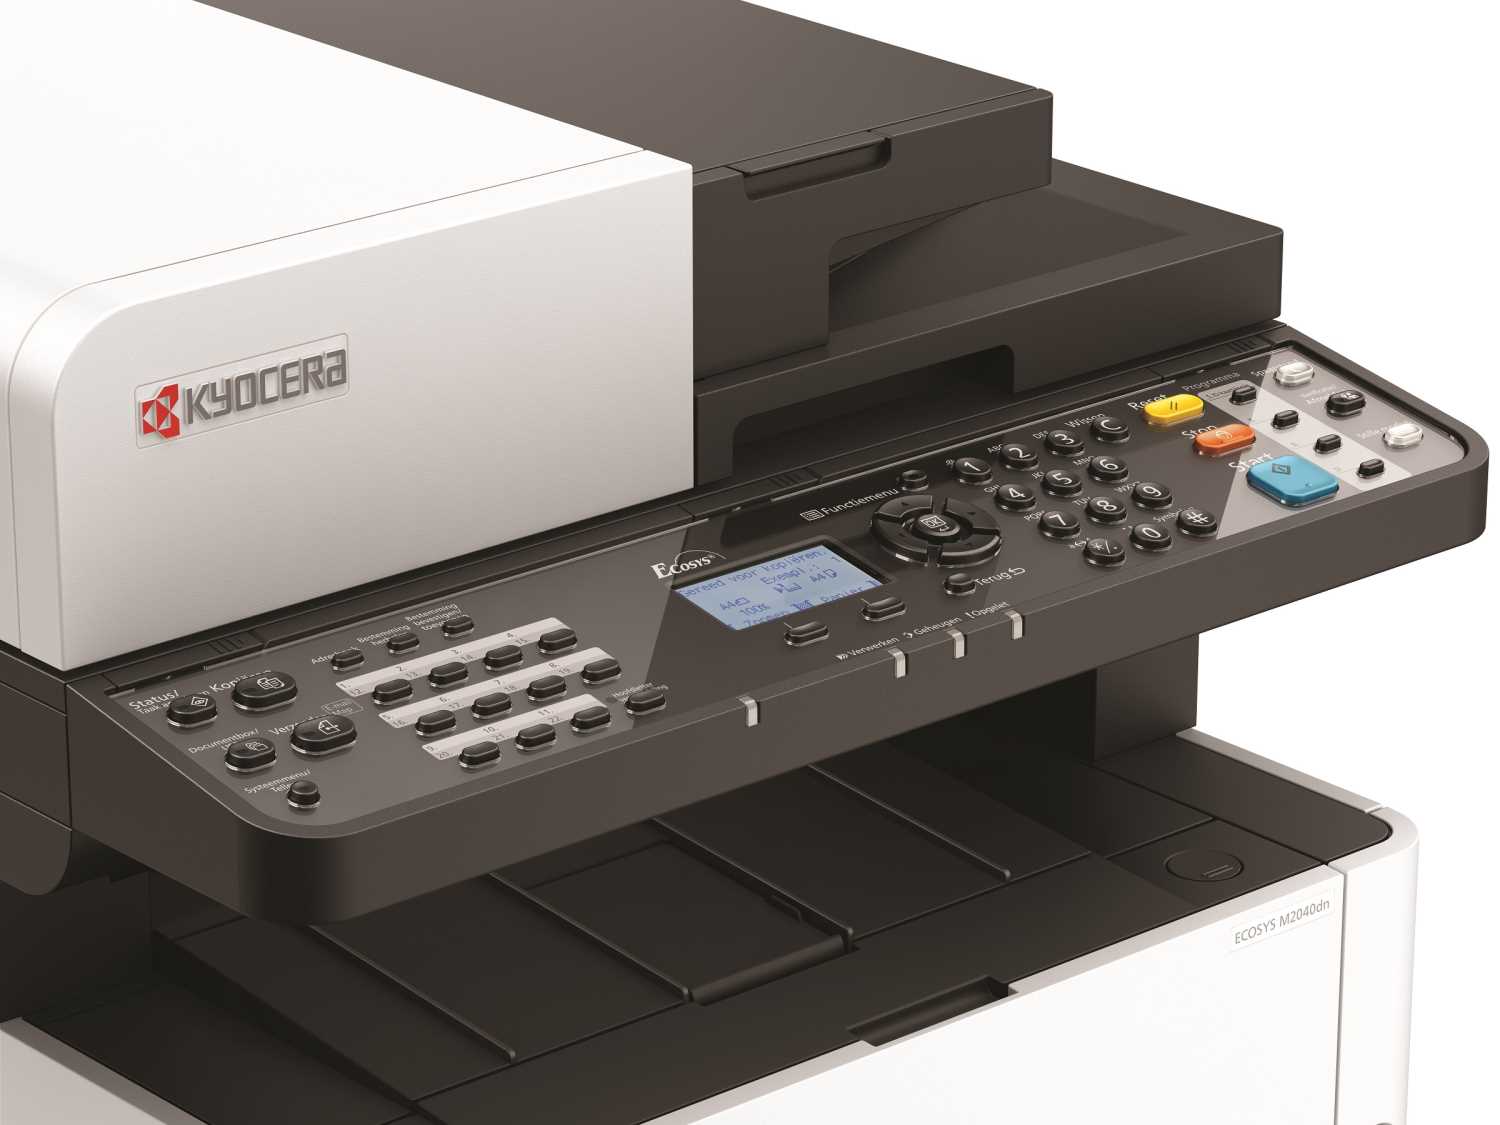 Лазерный копир-принтер-сканер Kyocera M2040dn (А4, 40 ppm, 1200dpi, 512Mb, USB, Network, автоподатчик, тонер) отгрузка только с доп.тонером TK-1170